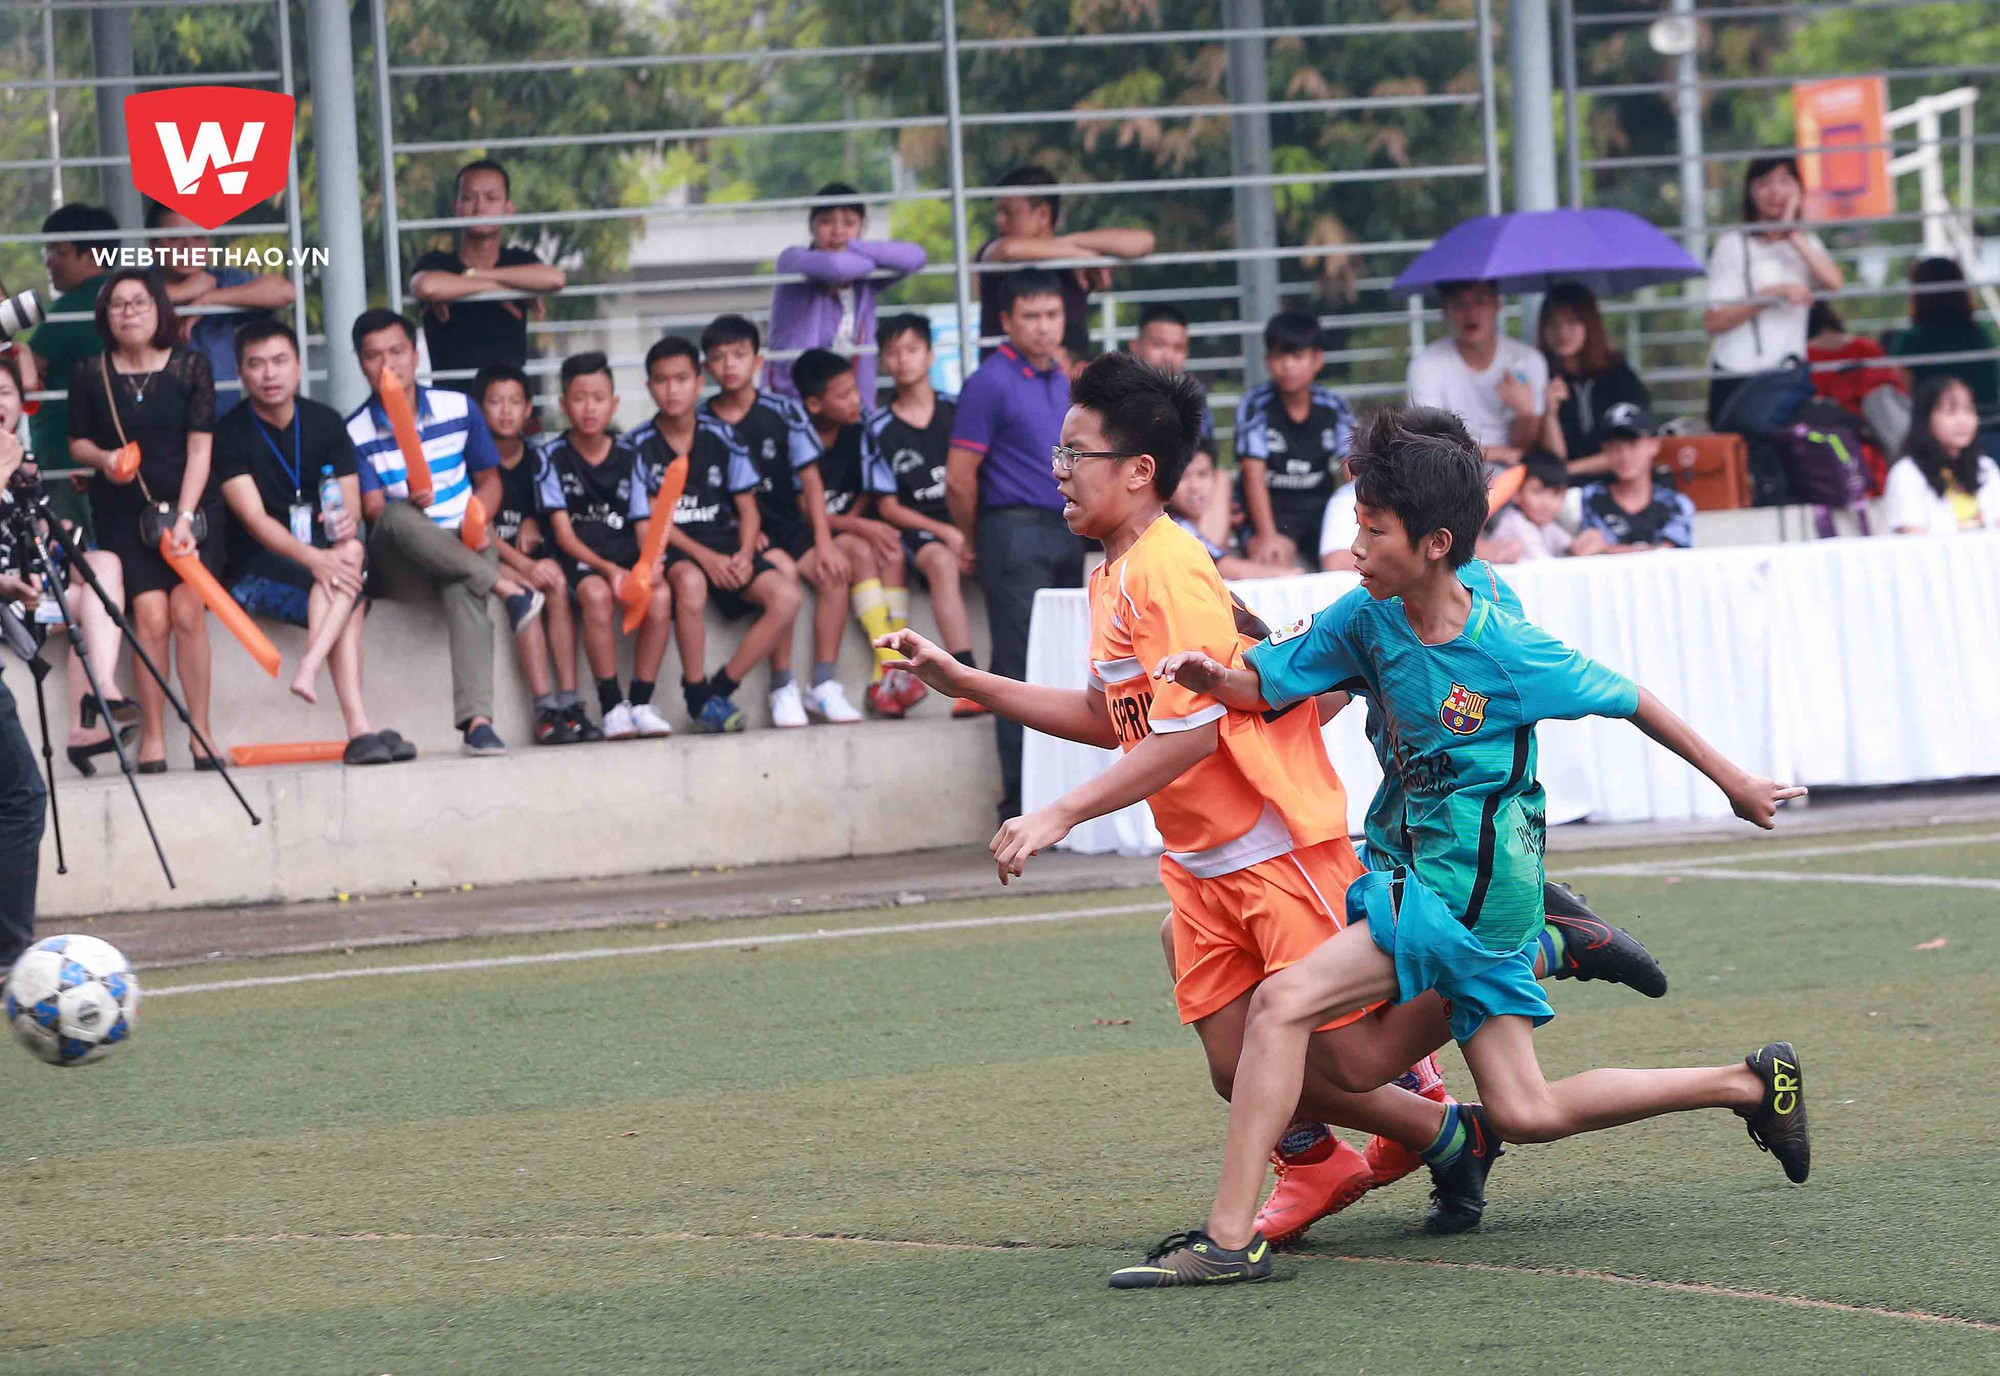 Cựu tiền vệ U19 Việt Nam đã thổi luồng sinh khí mới, khơi dạy niềm đam mê bóng đá của nhiều em nhỏ trường Well Spring. Ảnh Hải Đăng